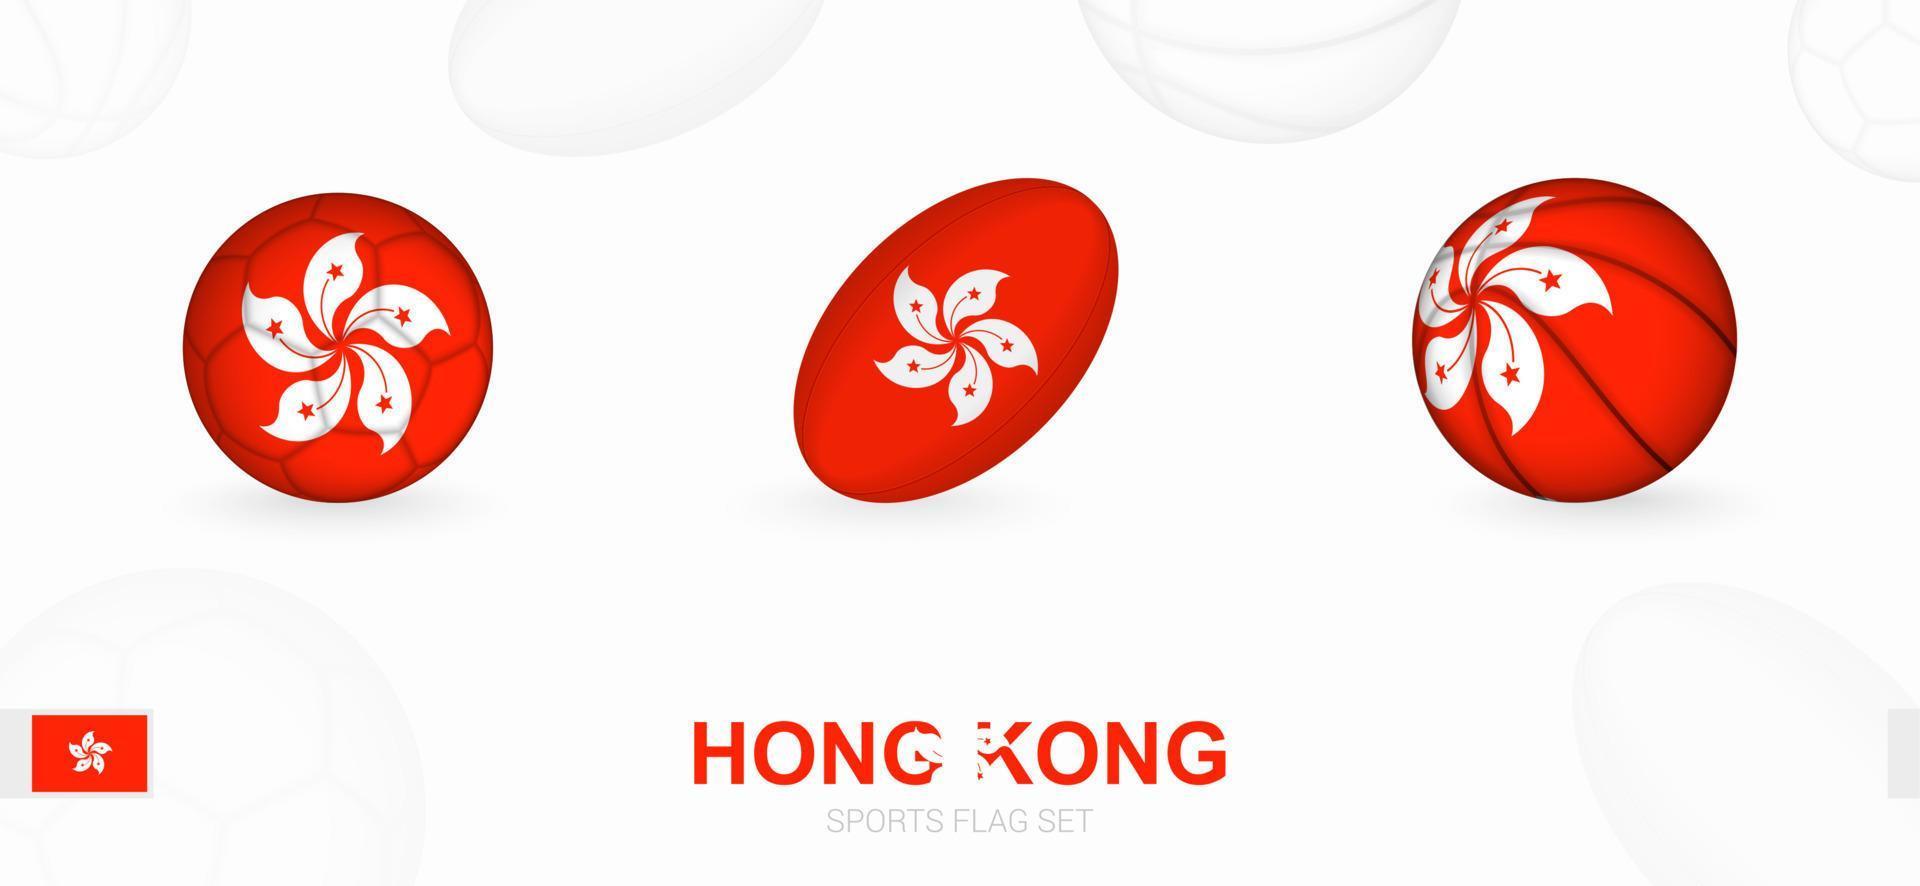 Deportes íconos para fútbol, rugby y baloncesto con el bandera de hong Kong vector